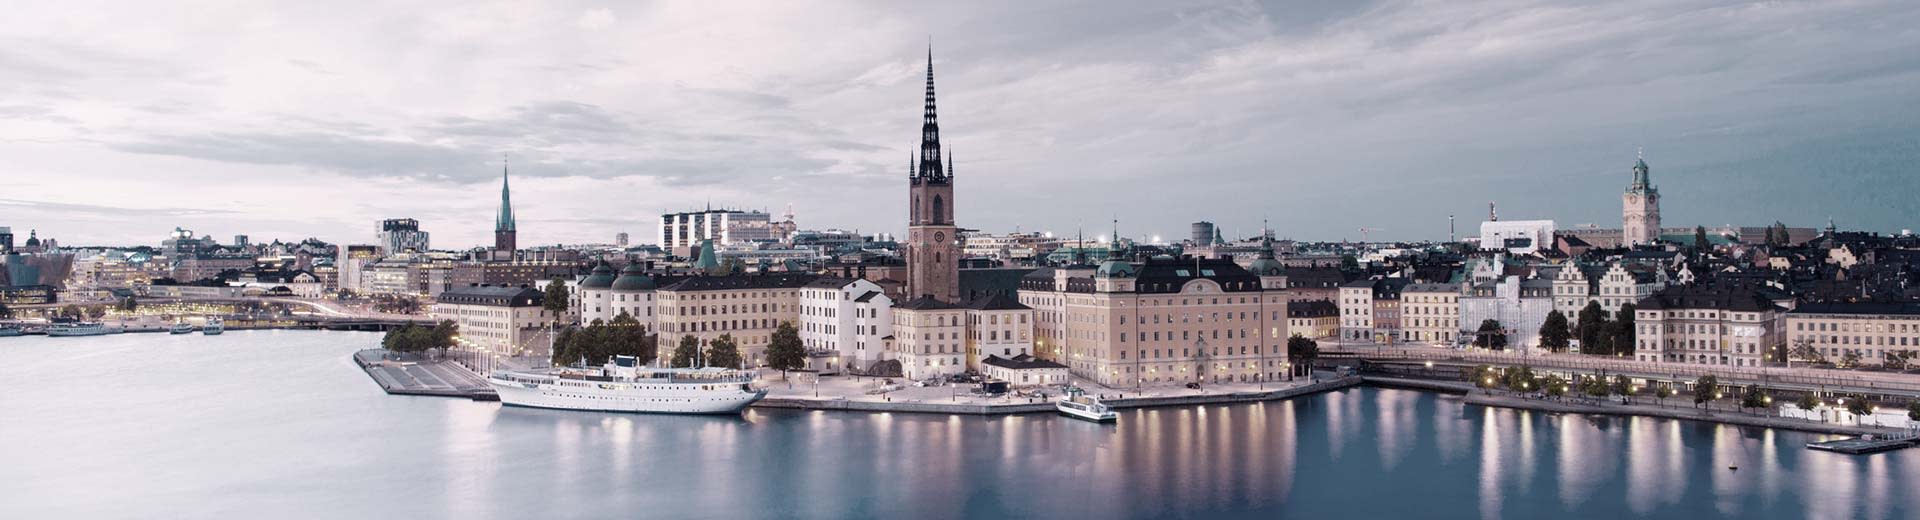 Les bâtiments historiques bordent les rives de Stockholm, avec des clochers de la moquette de tapis gris et des bâtiments plus modernes.